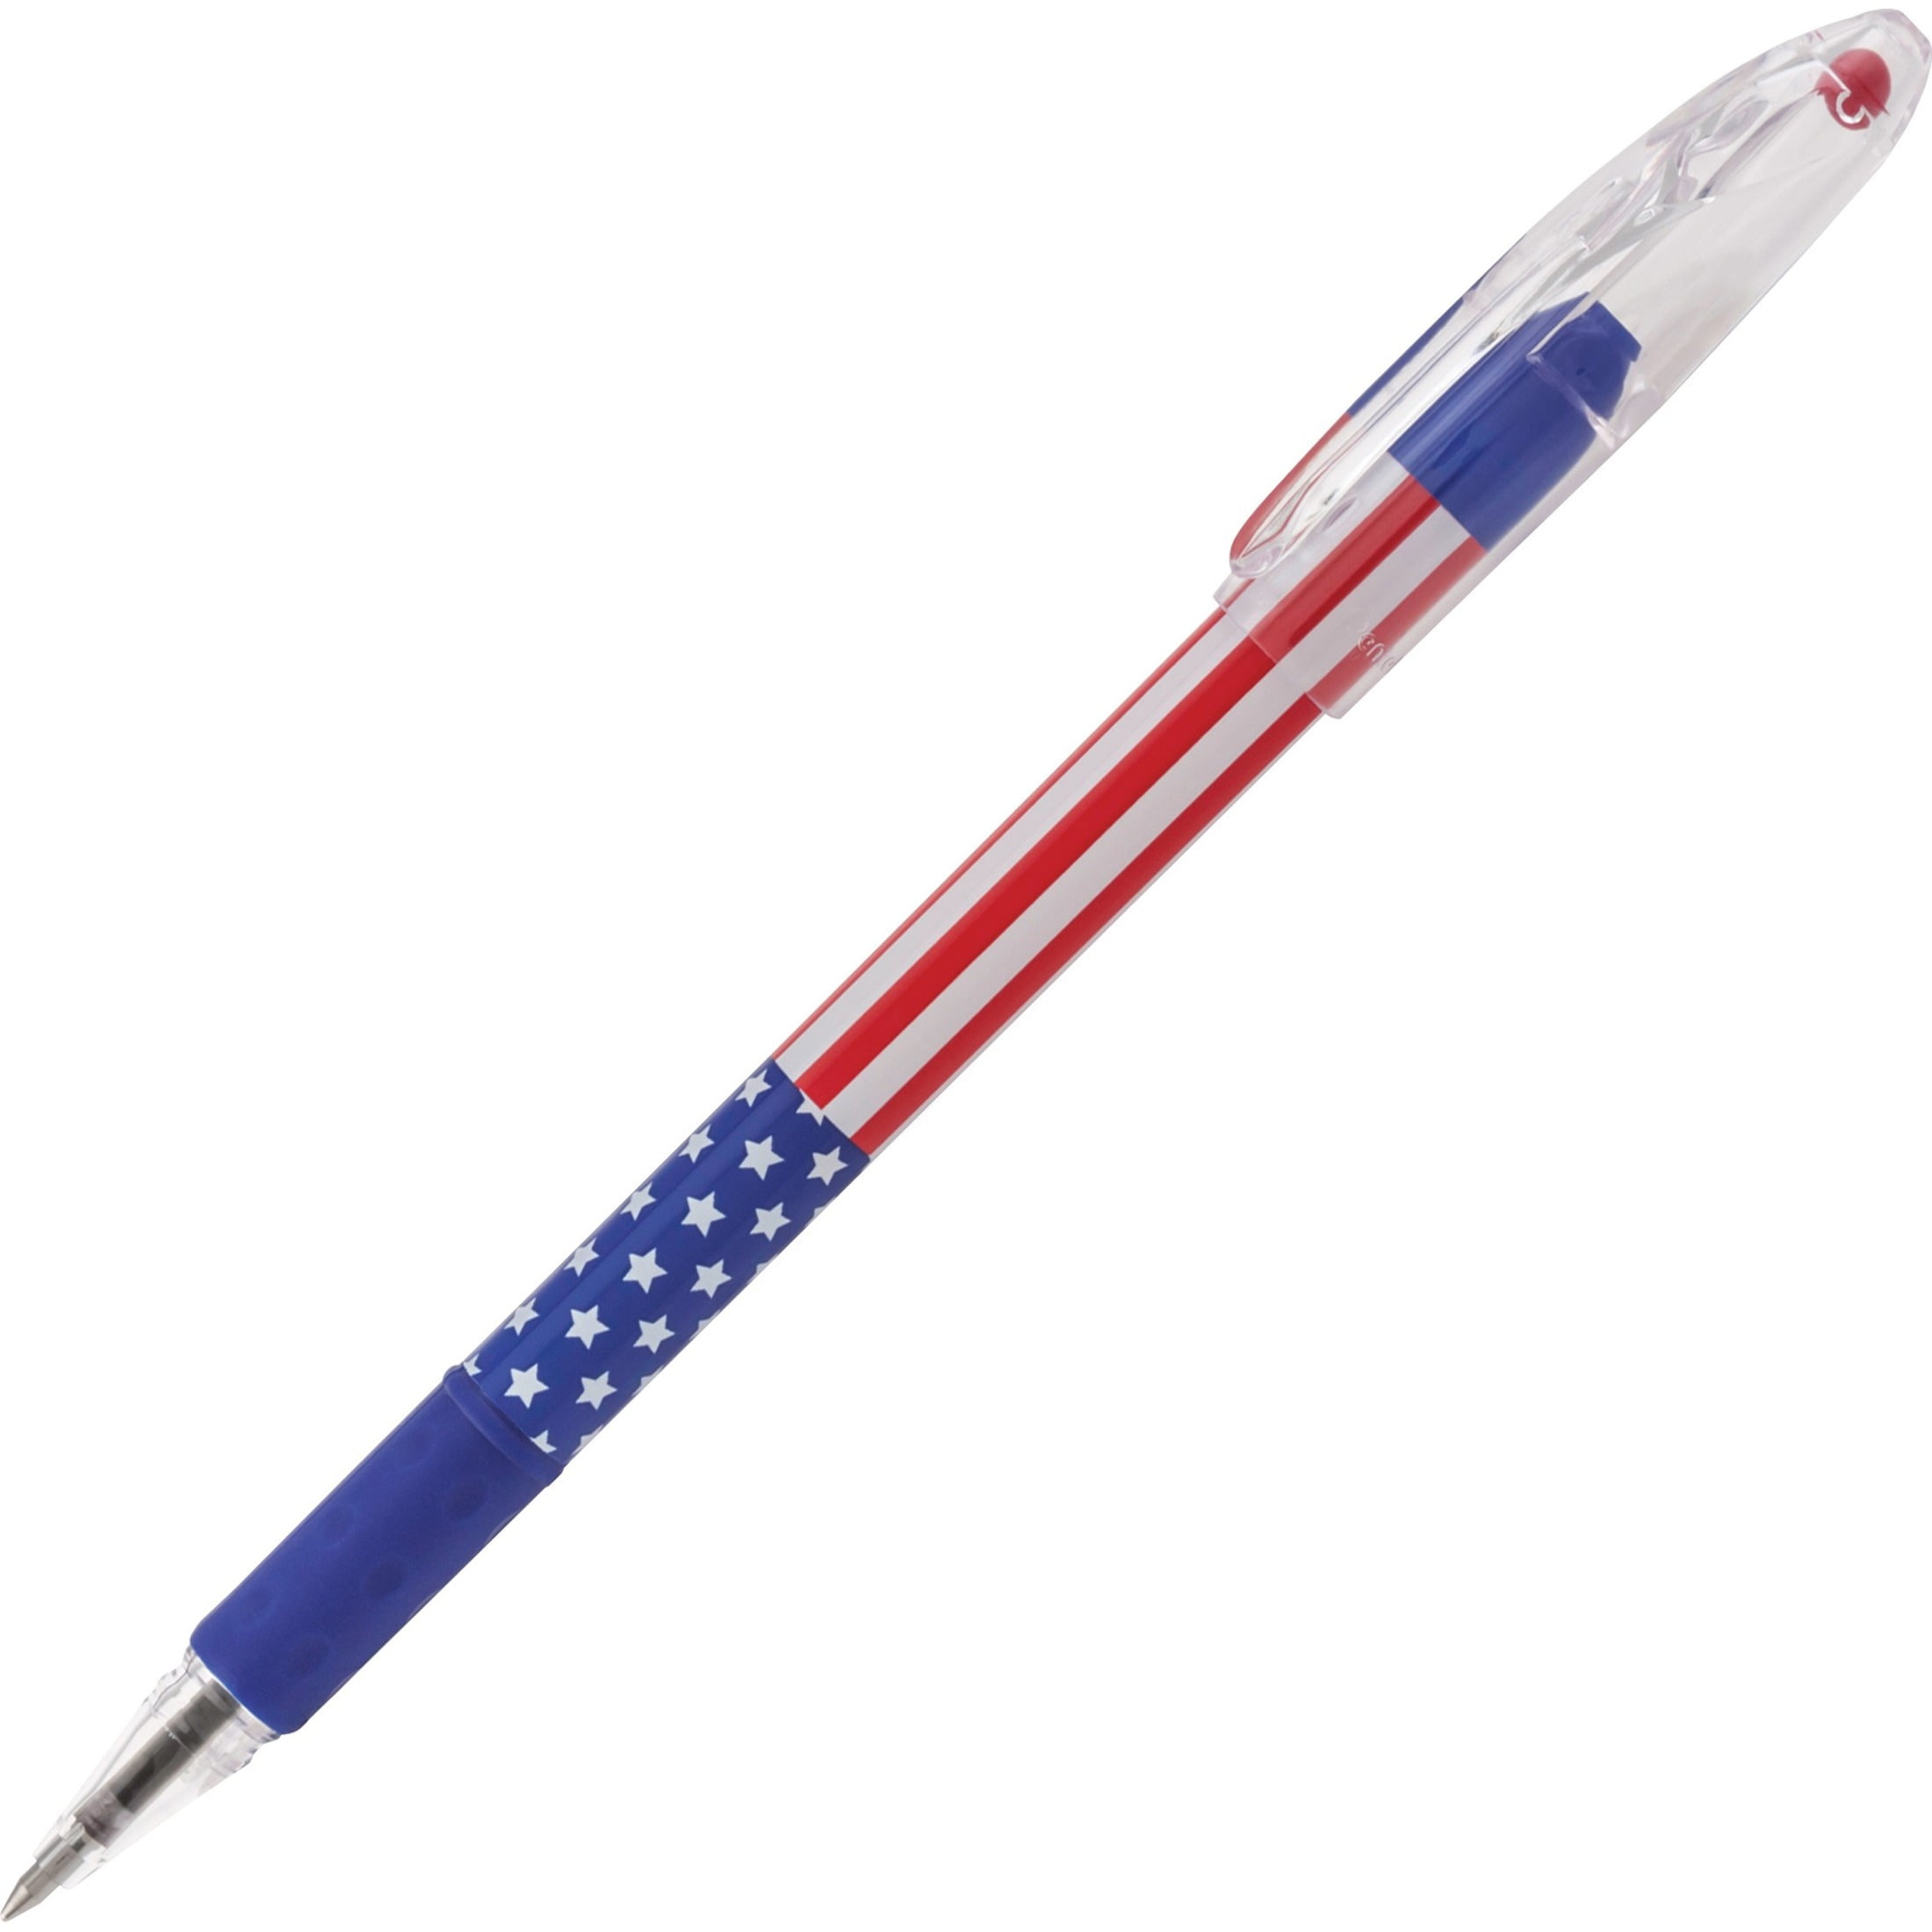 Texas Rangers Retractable Click Pen 5 Pen Pack 